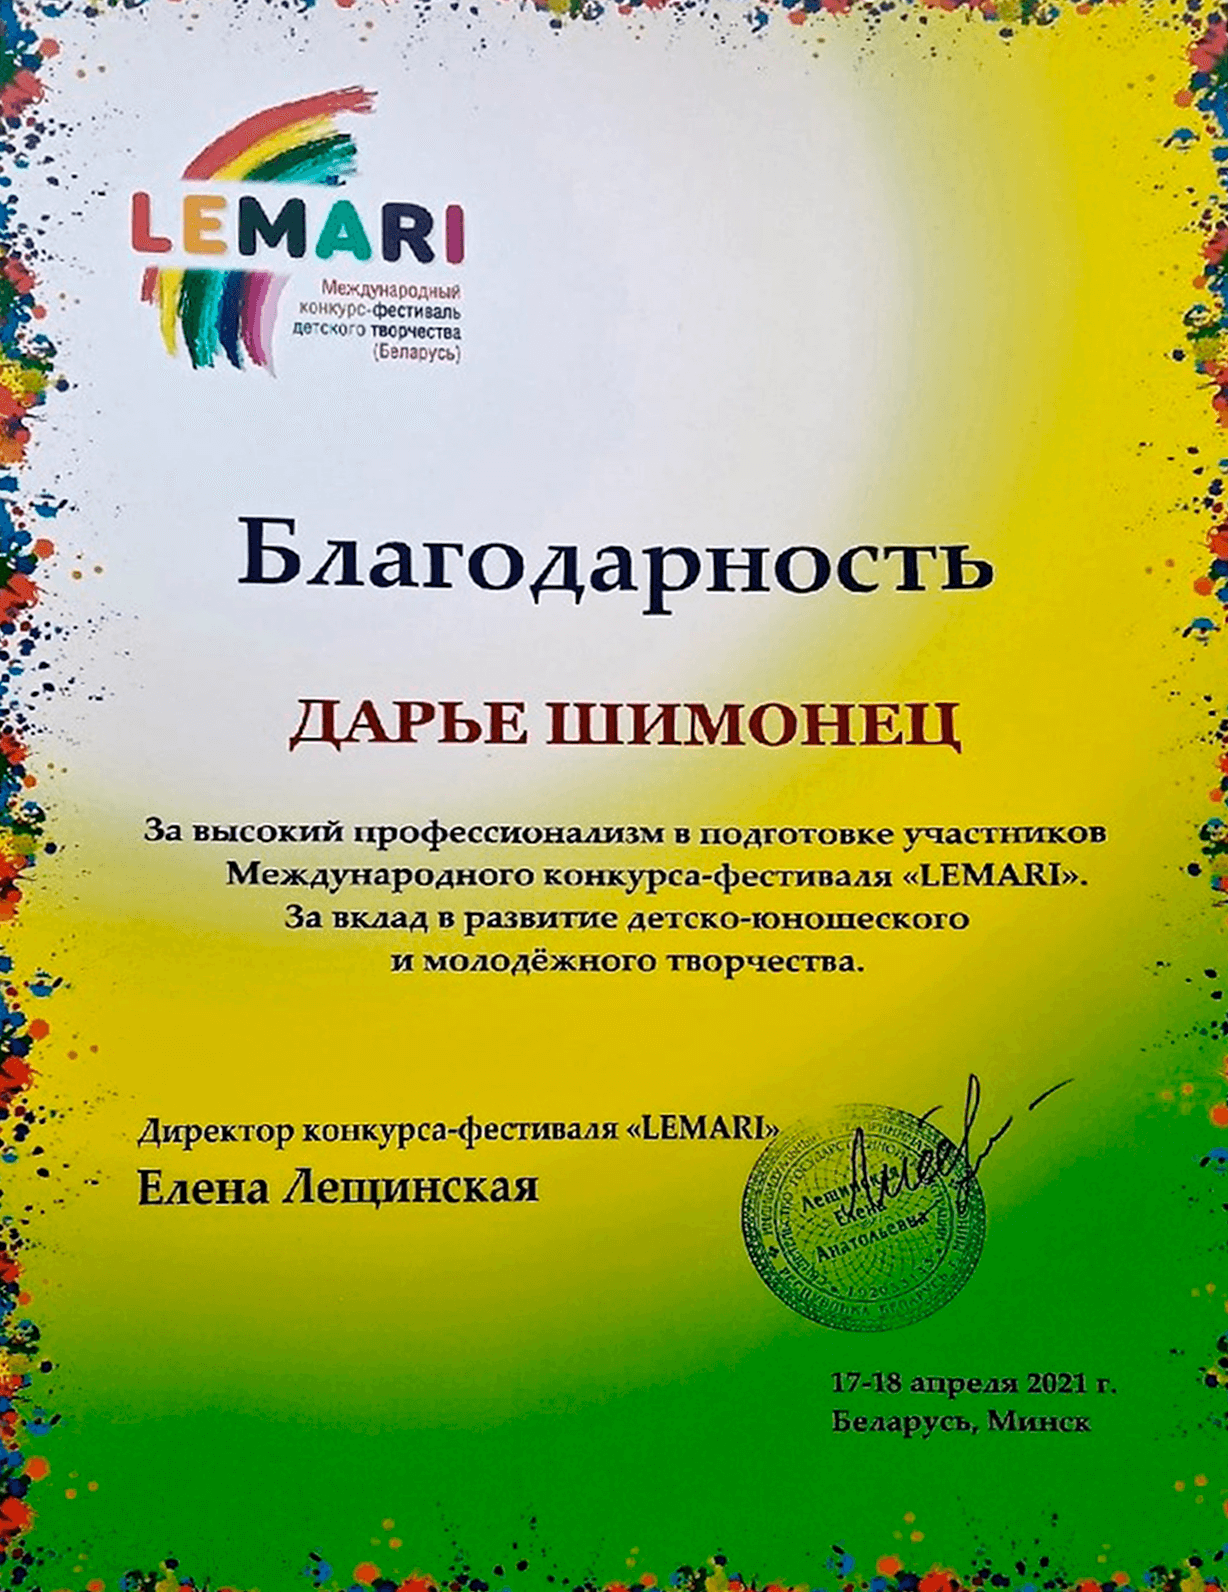 Лауреаты фестиваля Lemari Барановичи